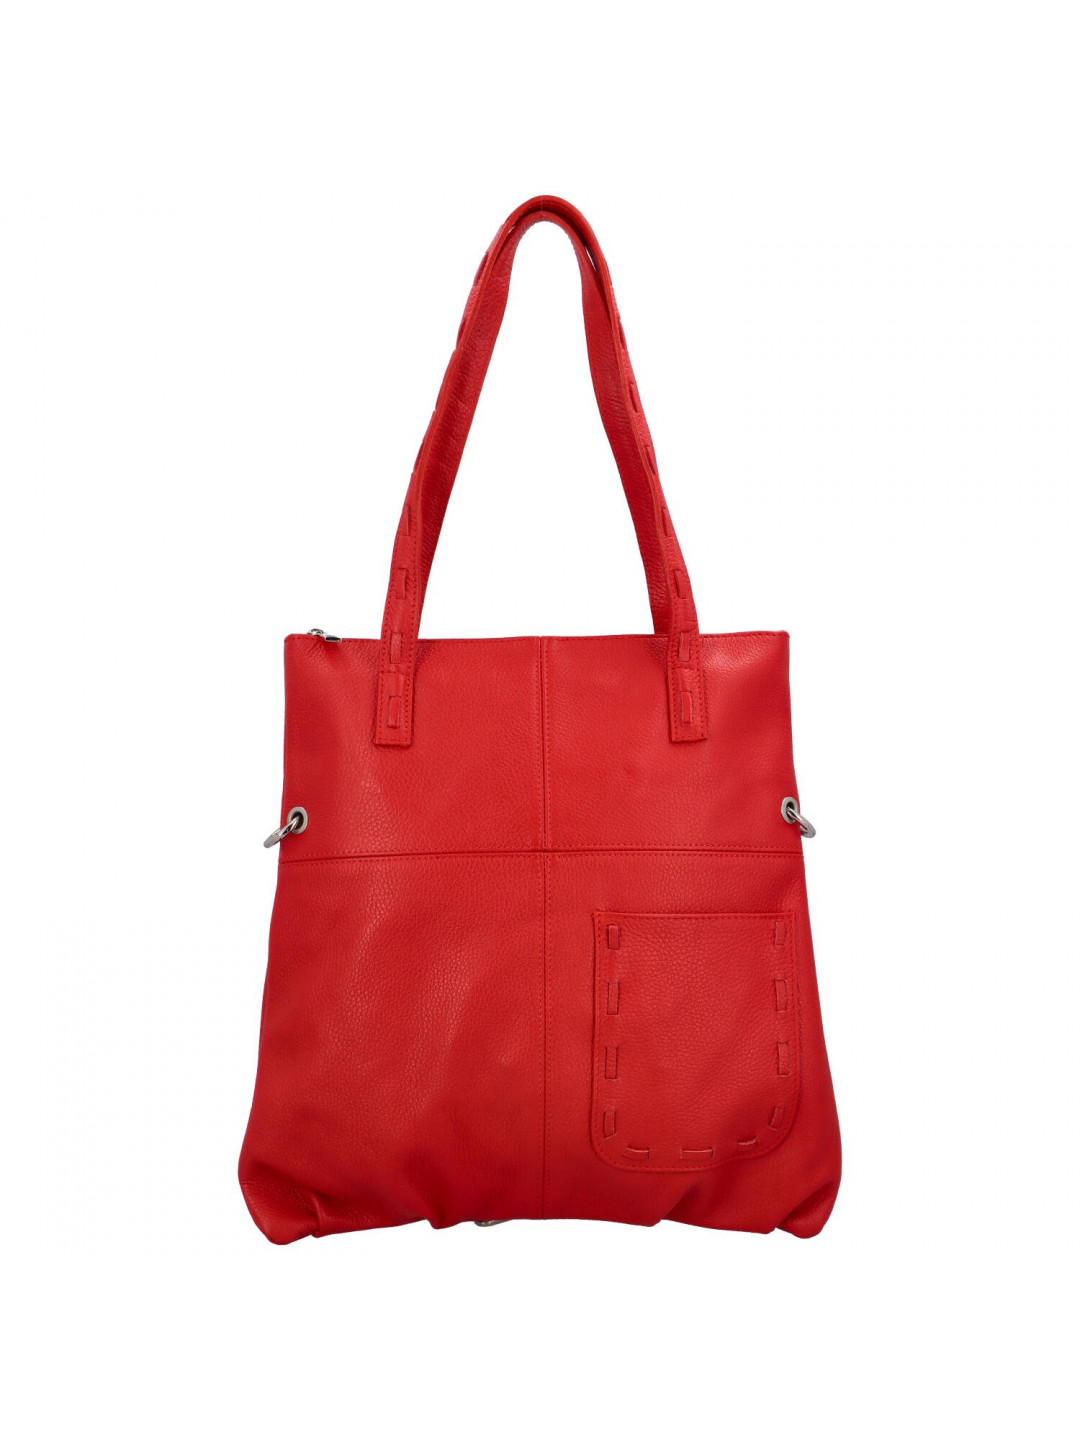 Osobitá dámská kožená kabelka přes rameno Liv červená